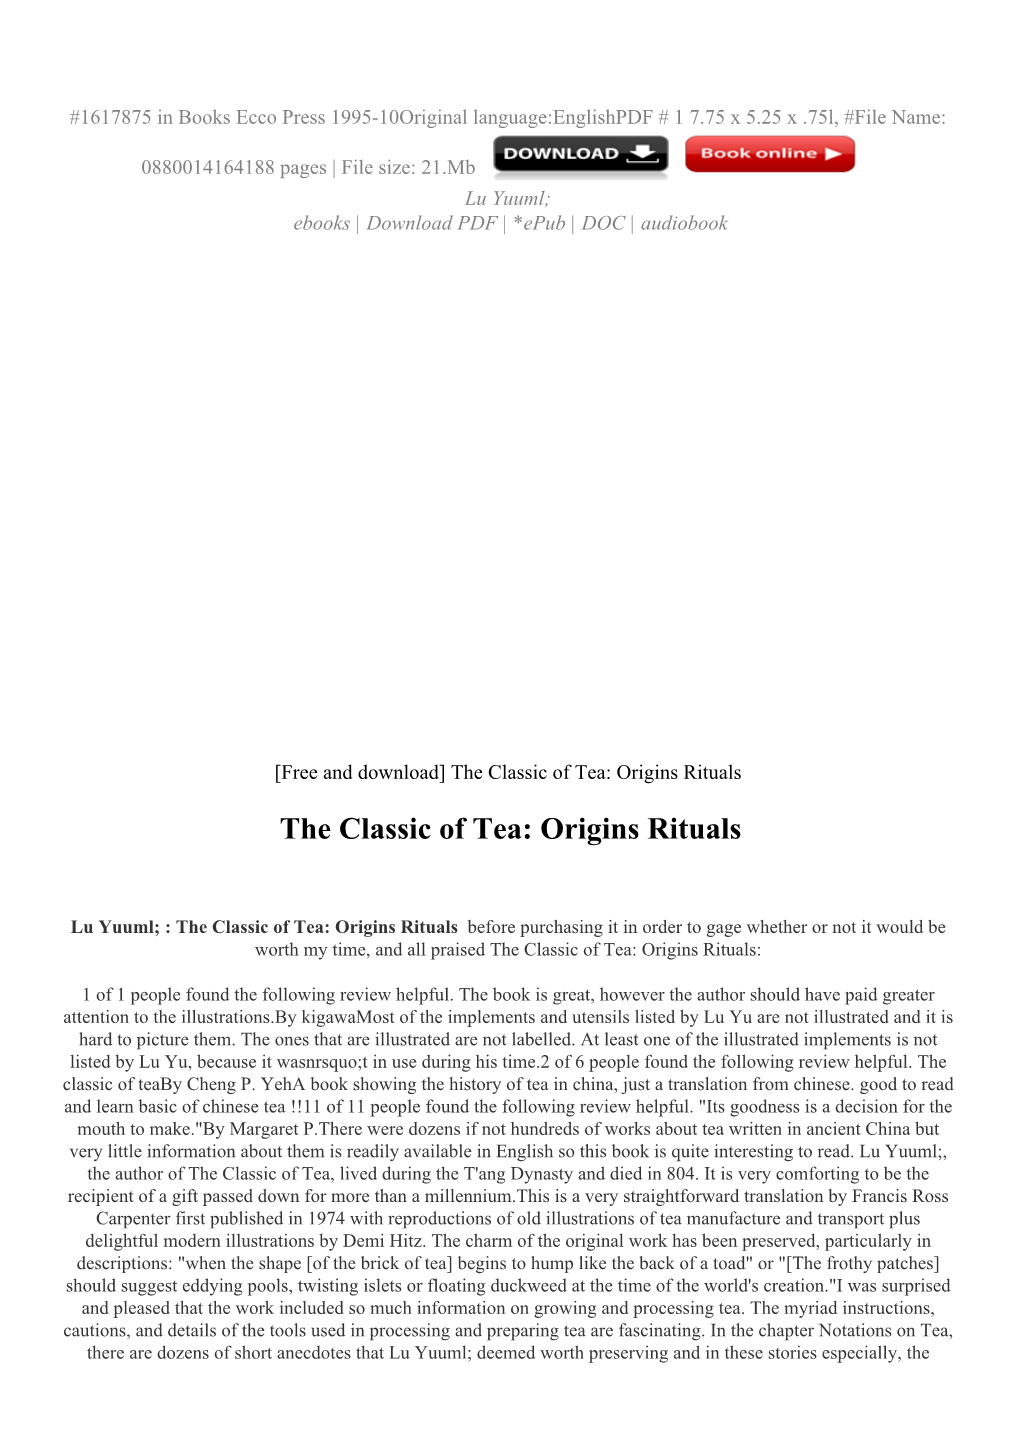 The Classic of Tea: Origins Rituals